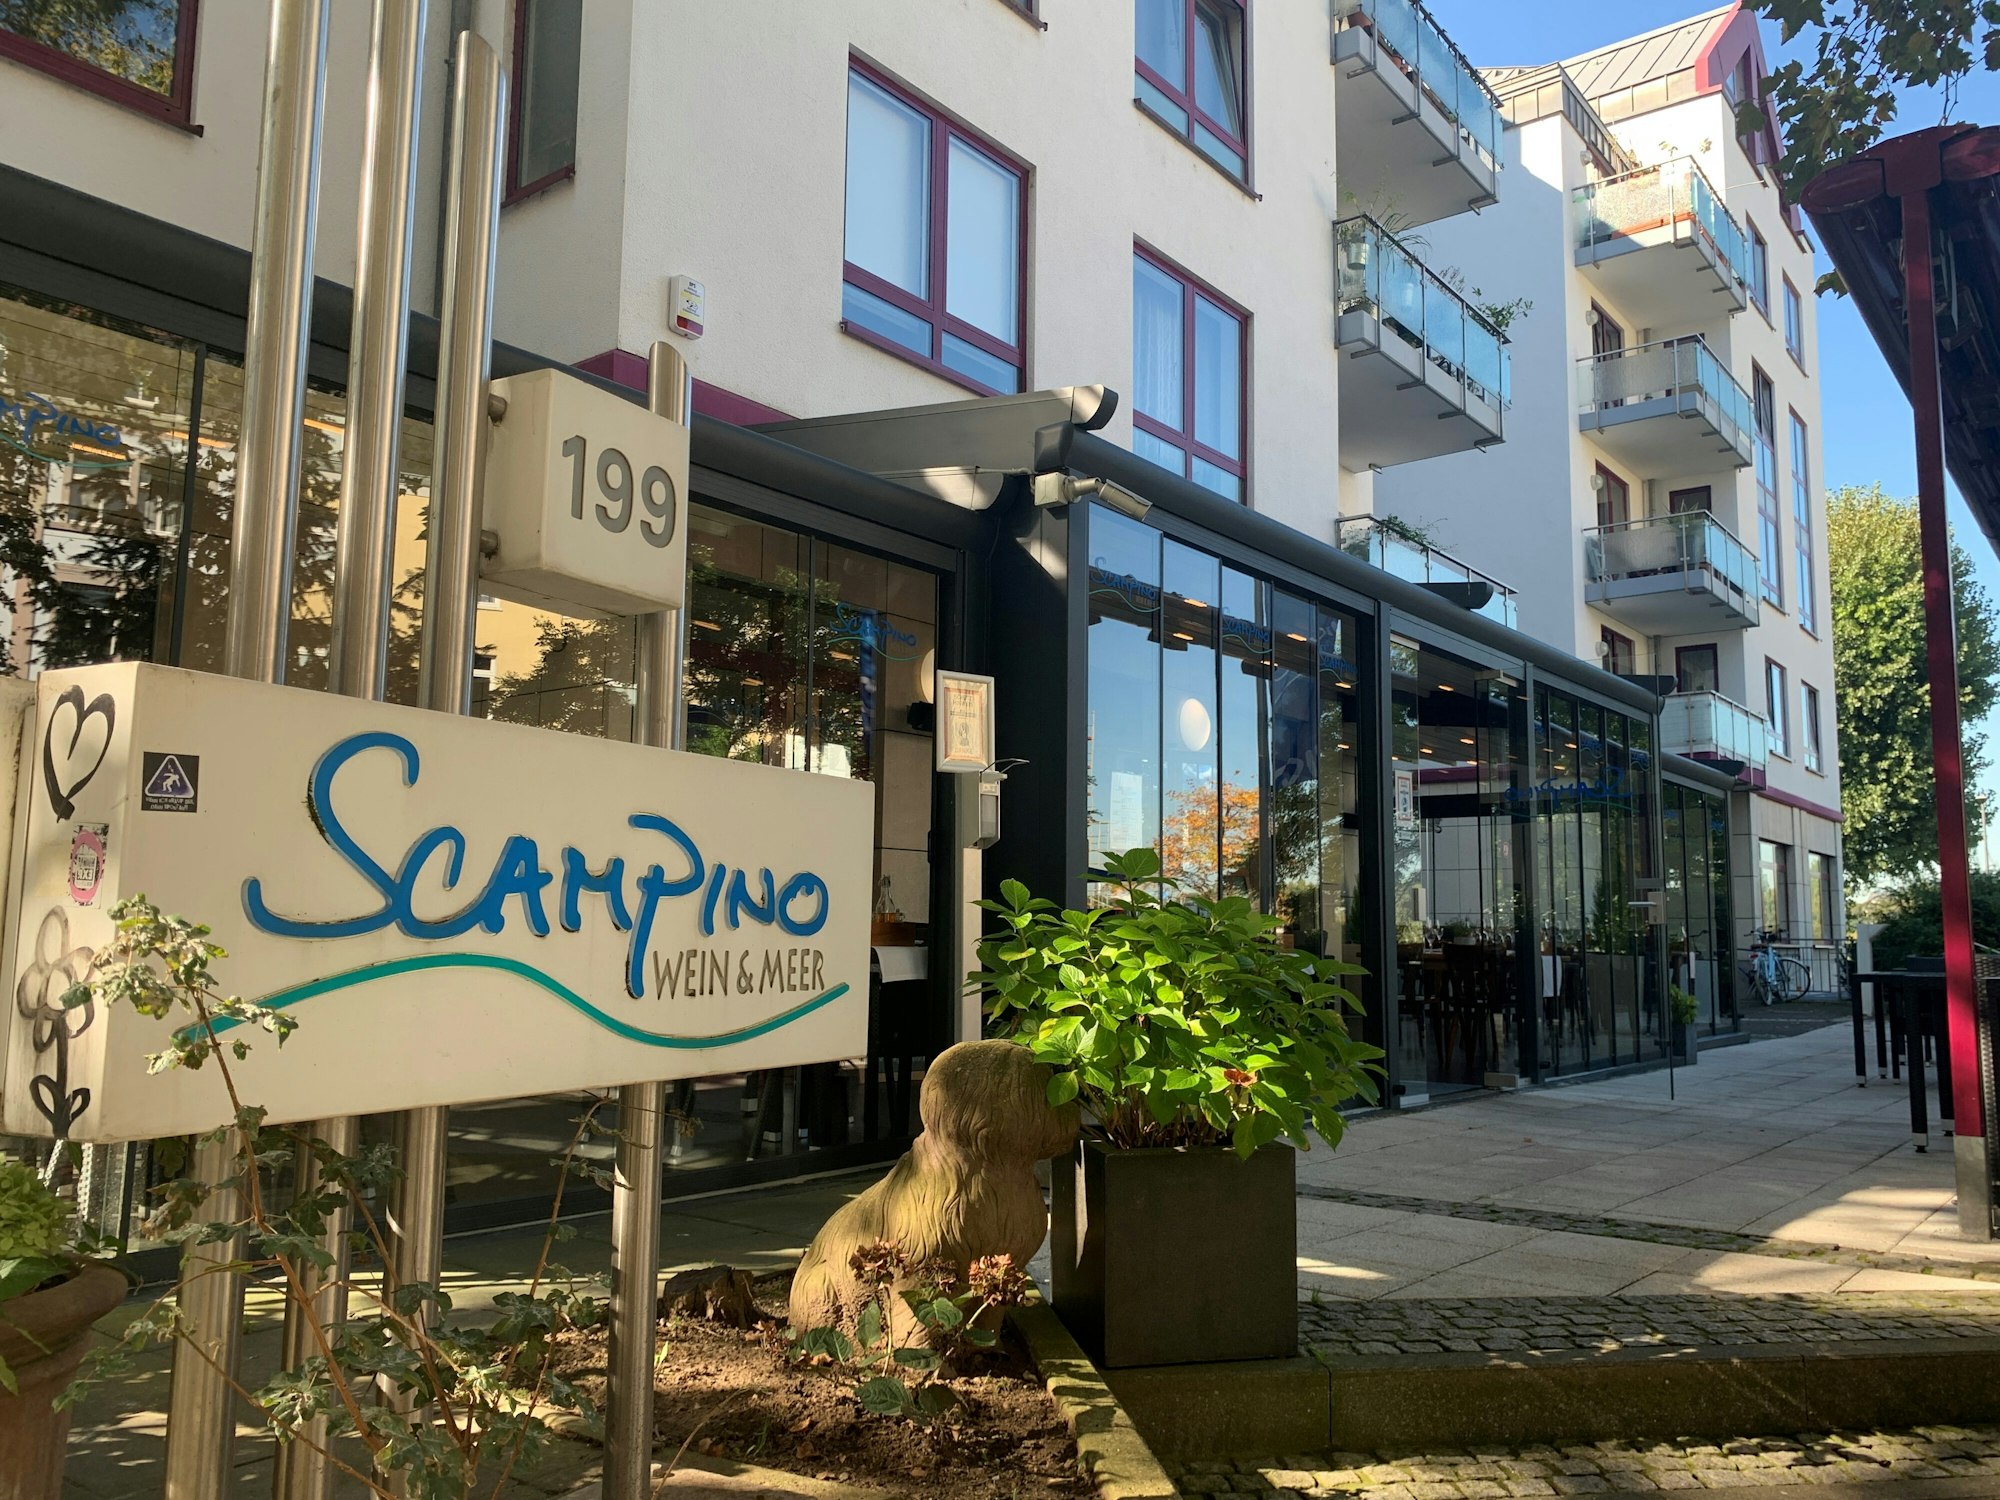 Außenansicht des Restaurants Scampino in Köln-Mülheim.